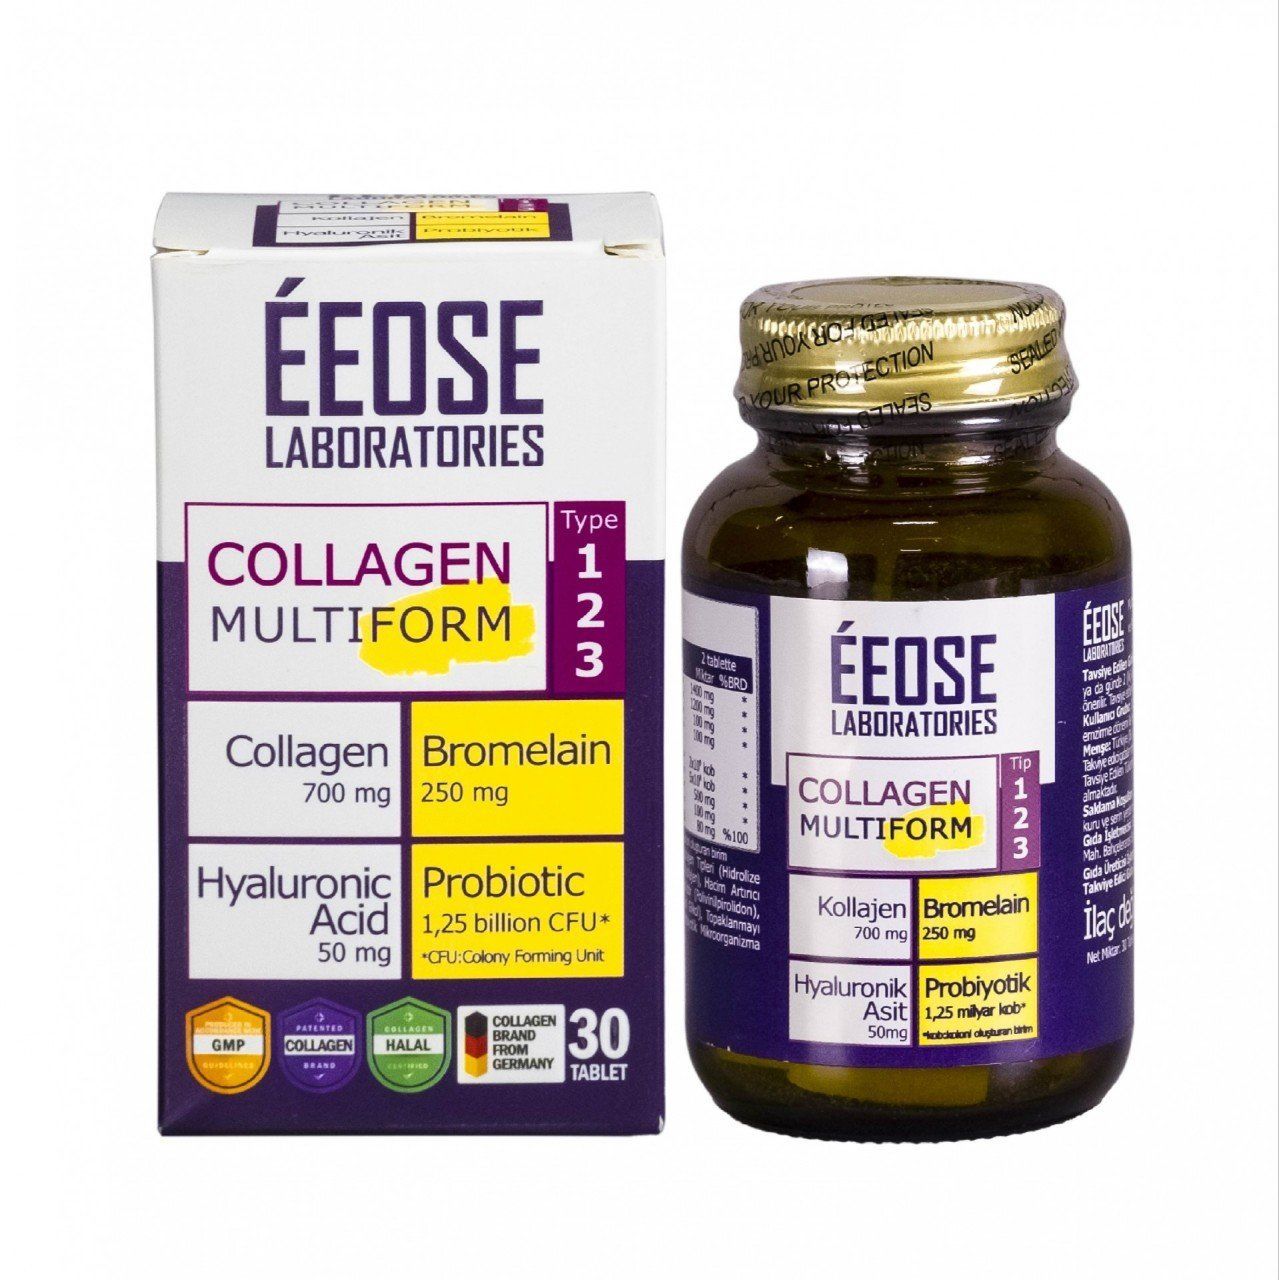 EEOSE Multiform Hidrolize Kollajen, Bromelain, Hyaluronik Asit ve Probiyotik Mikroorganizma 30 Tablet